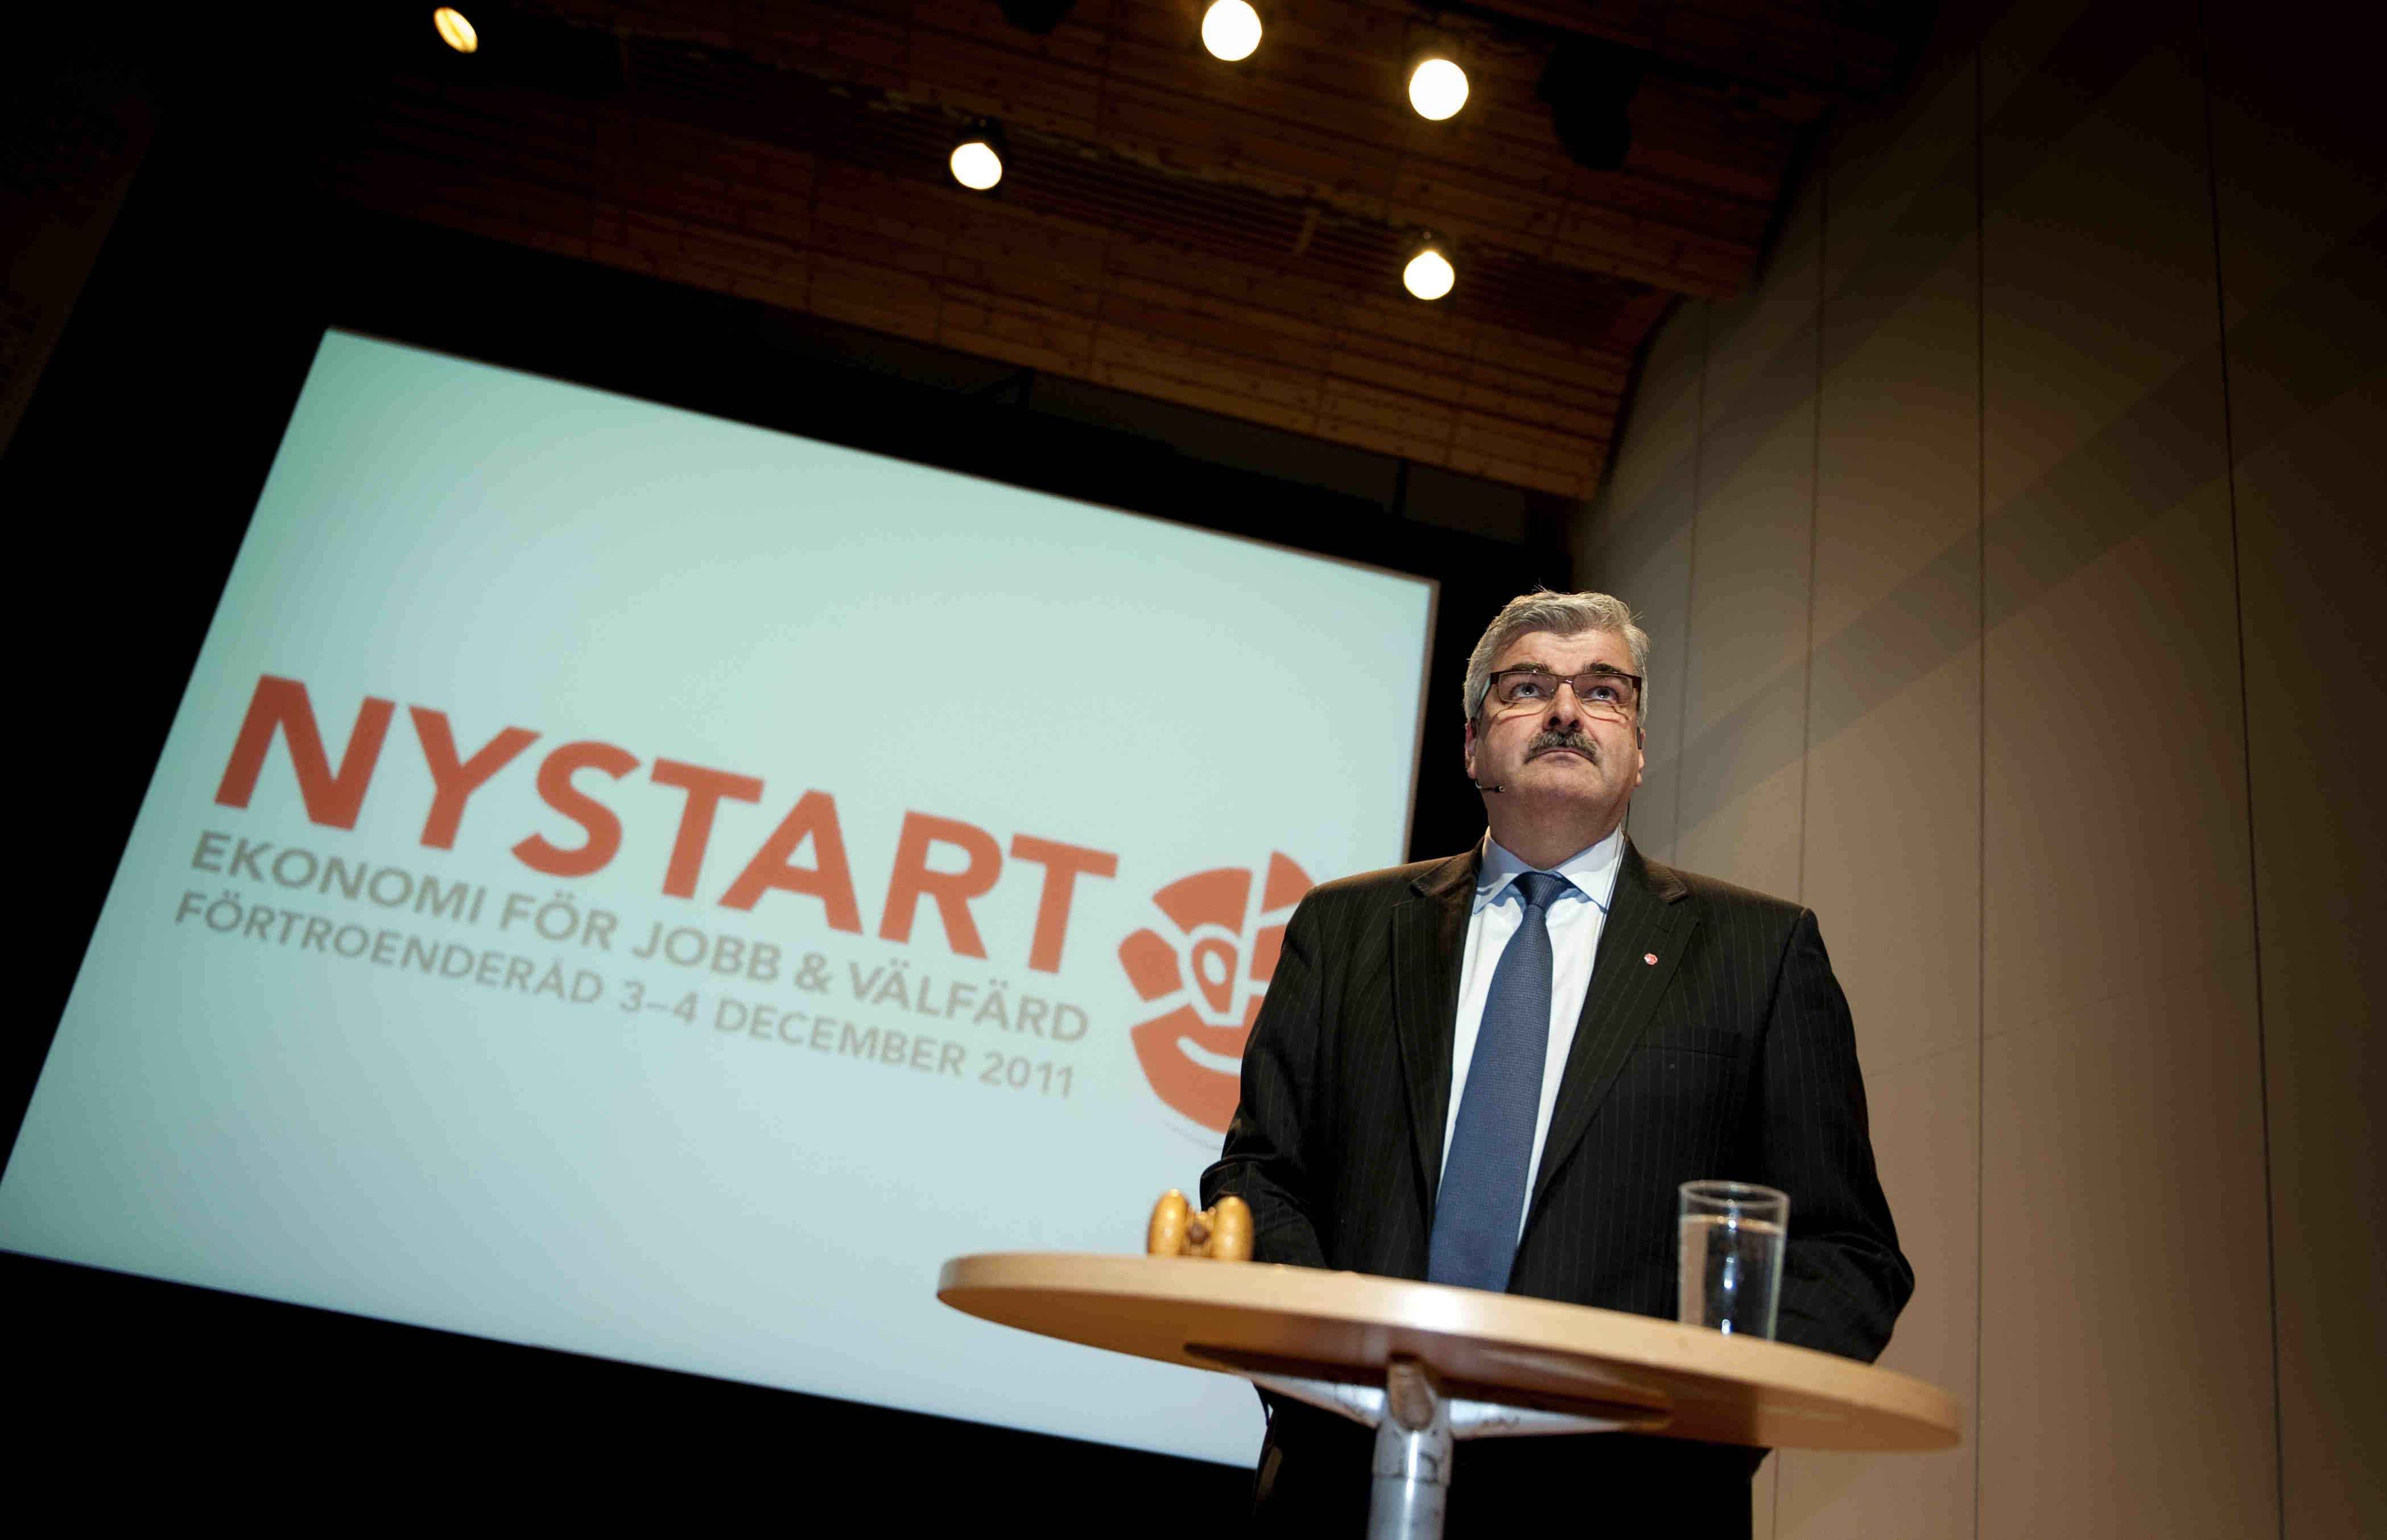 Håkan Juholt talade på partiets förtroenderåd under lördagen.